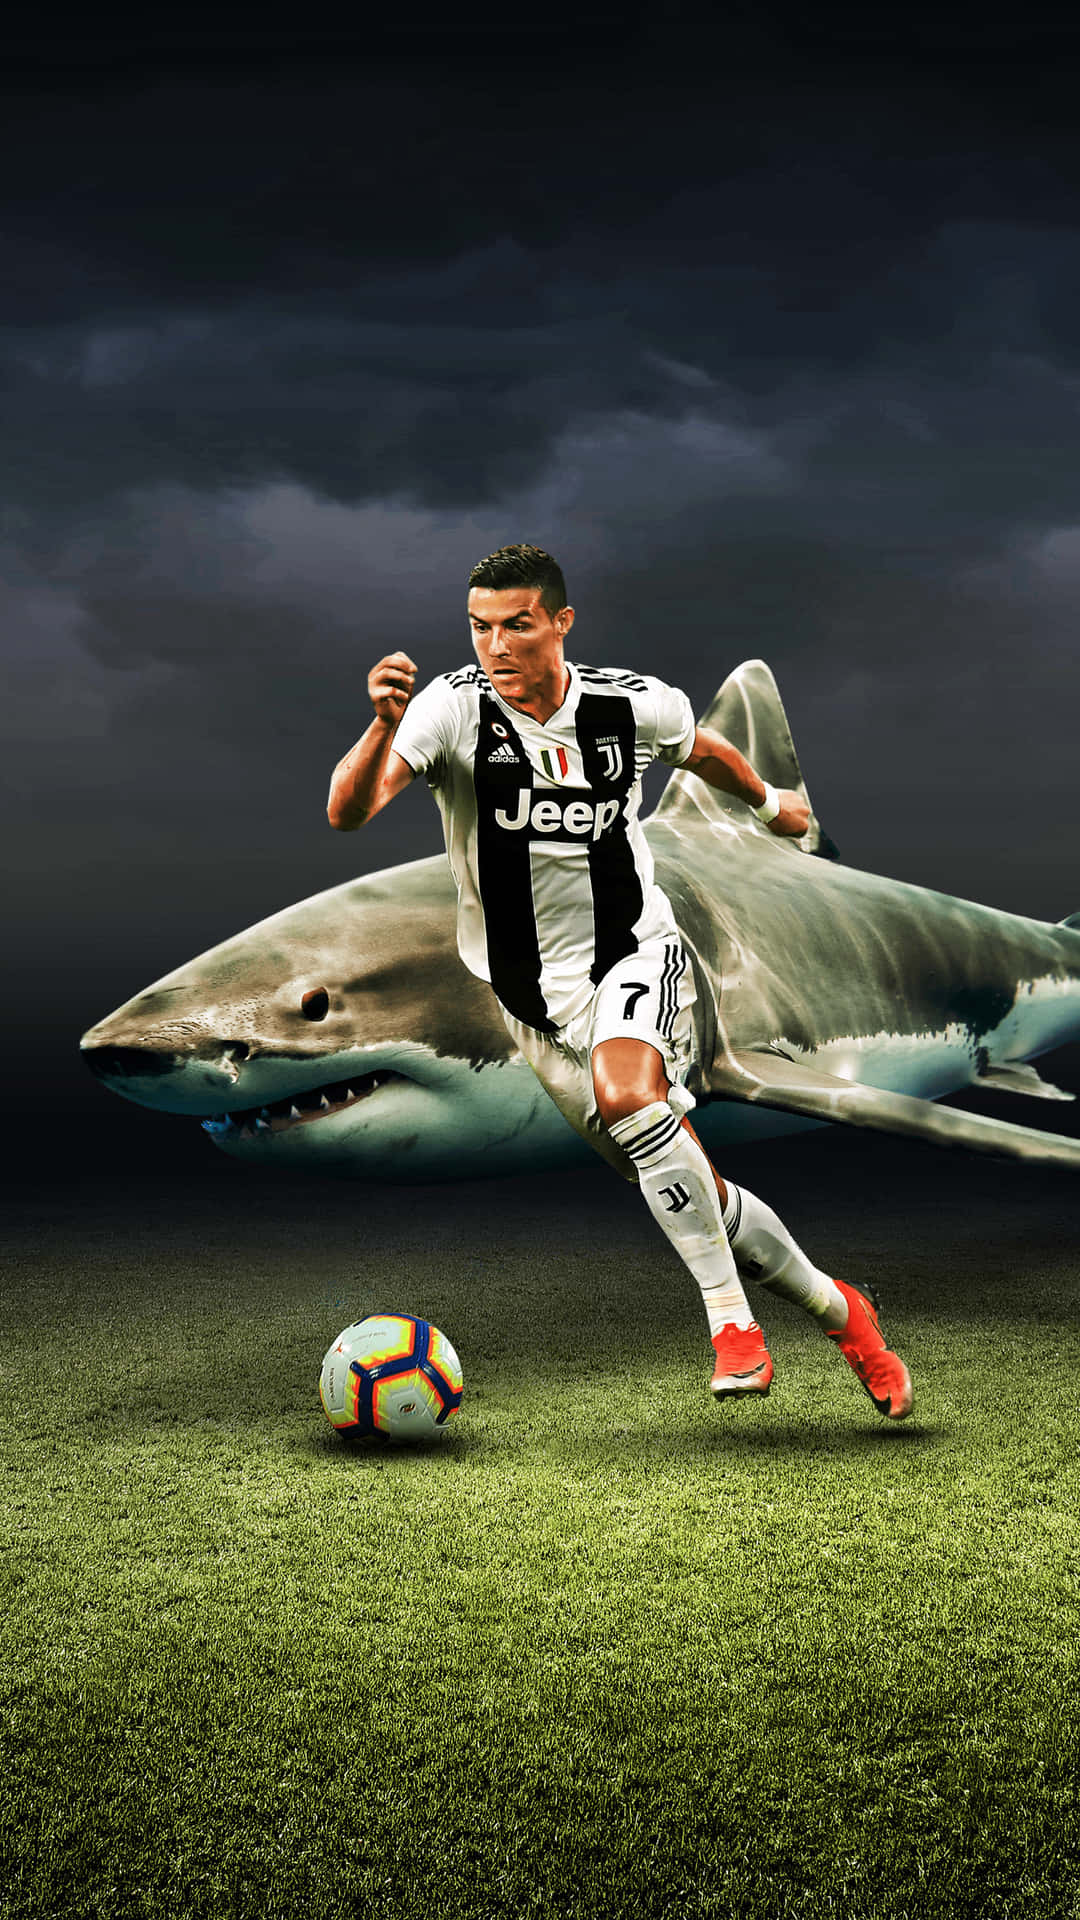 Billede af Cristiano Ronaldo, der er ved at tage et skud i et fodboldspil. Wallpaper